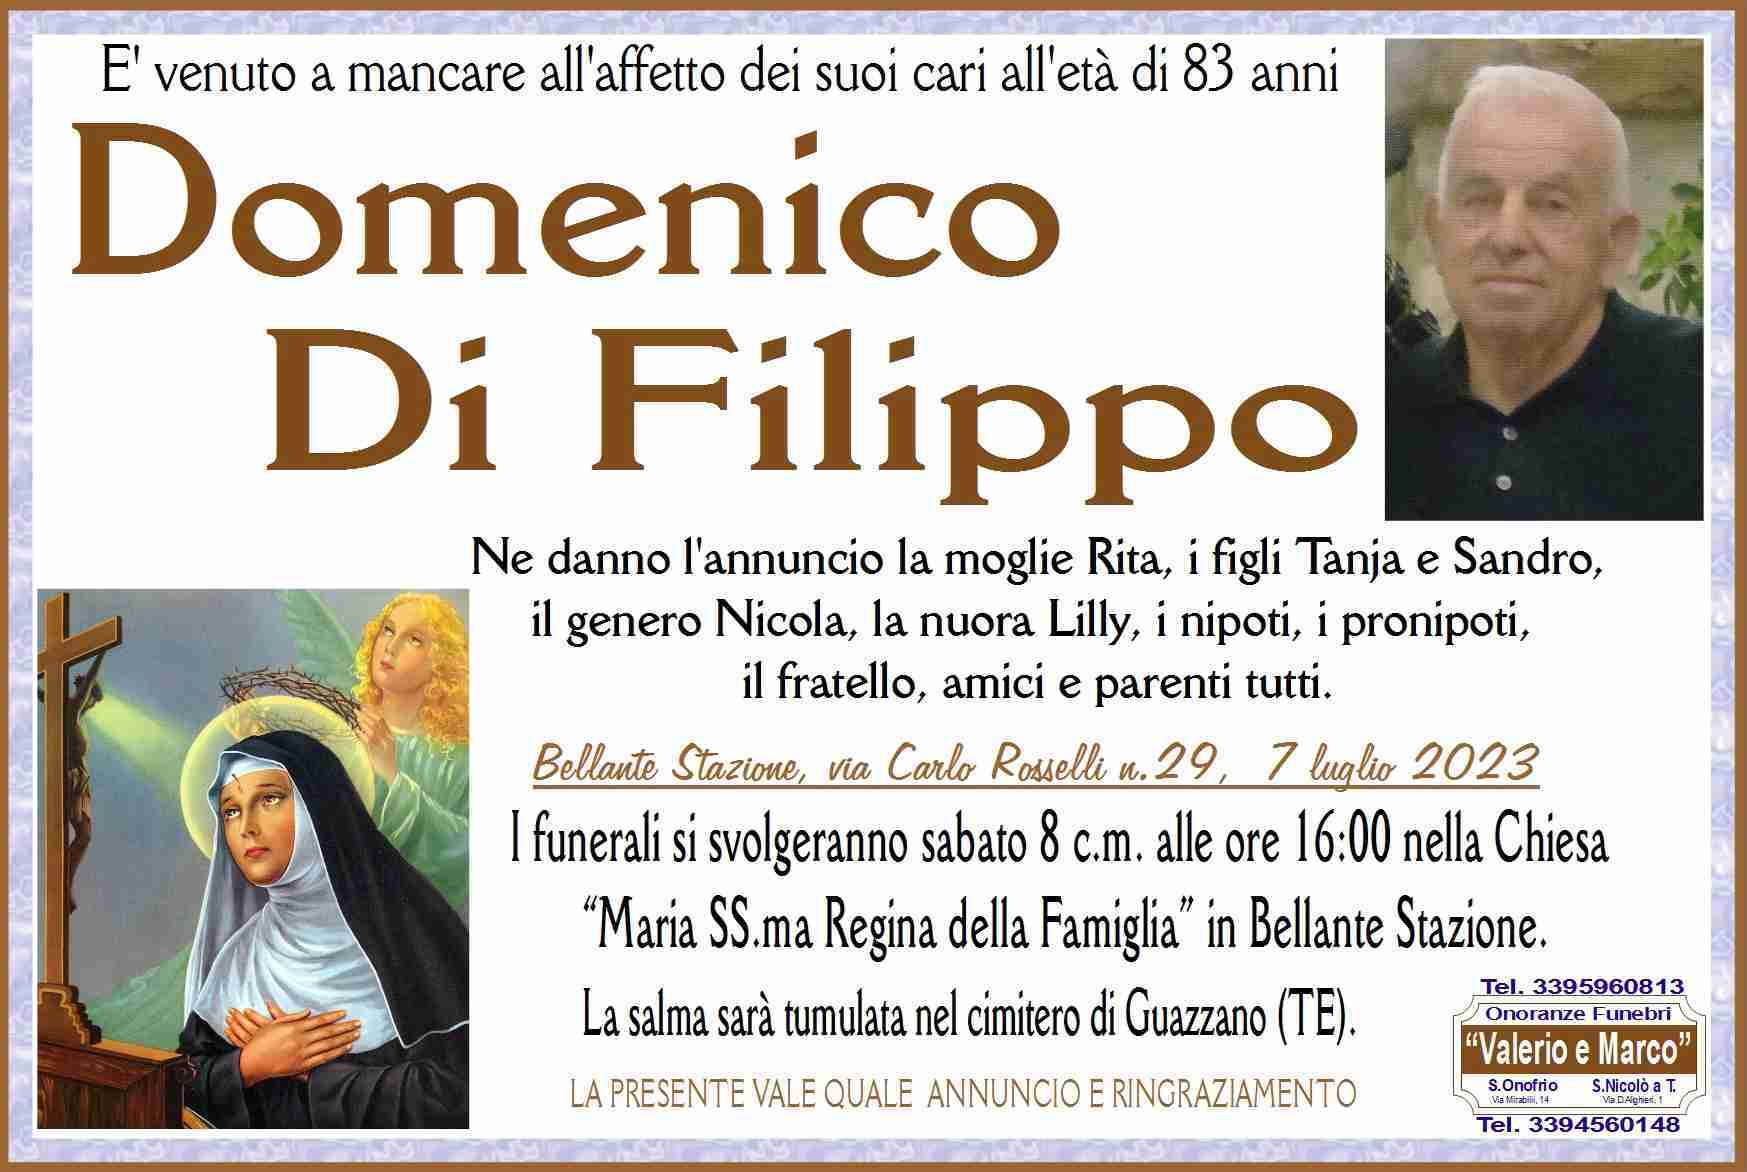 Domenico Di Filippo